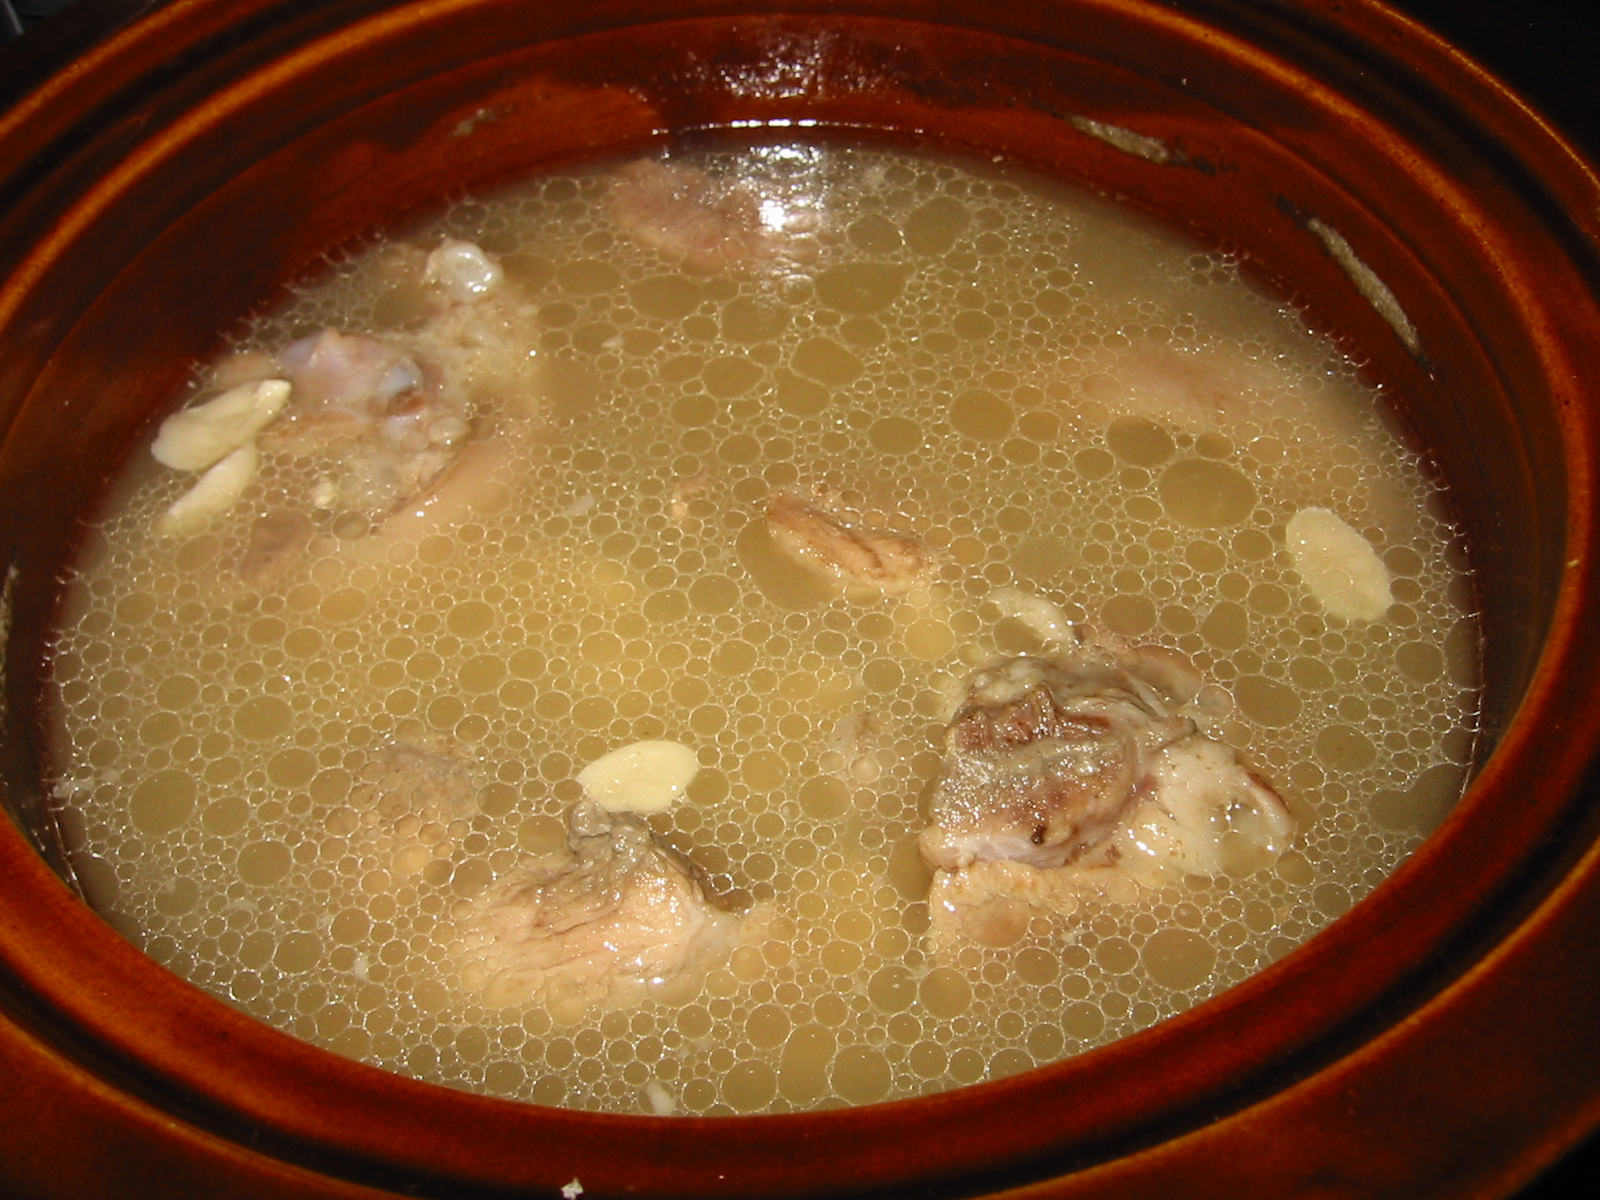 Peanut soup in crock pot